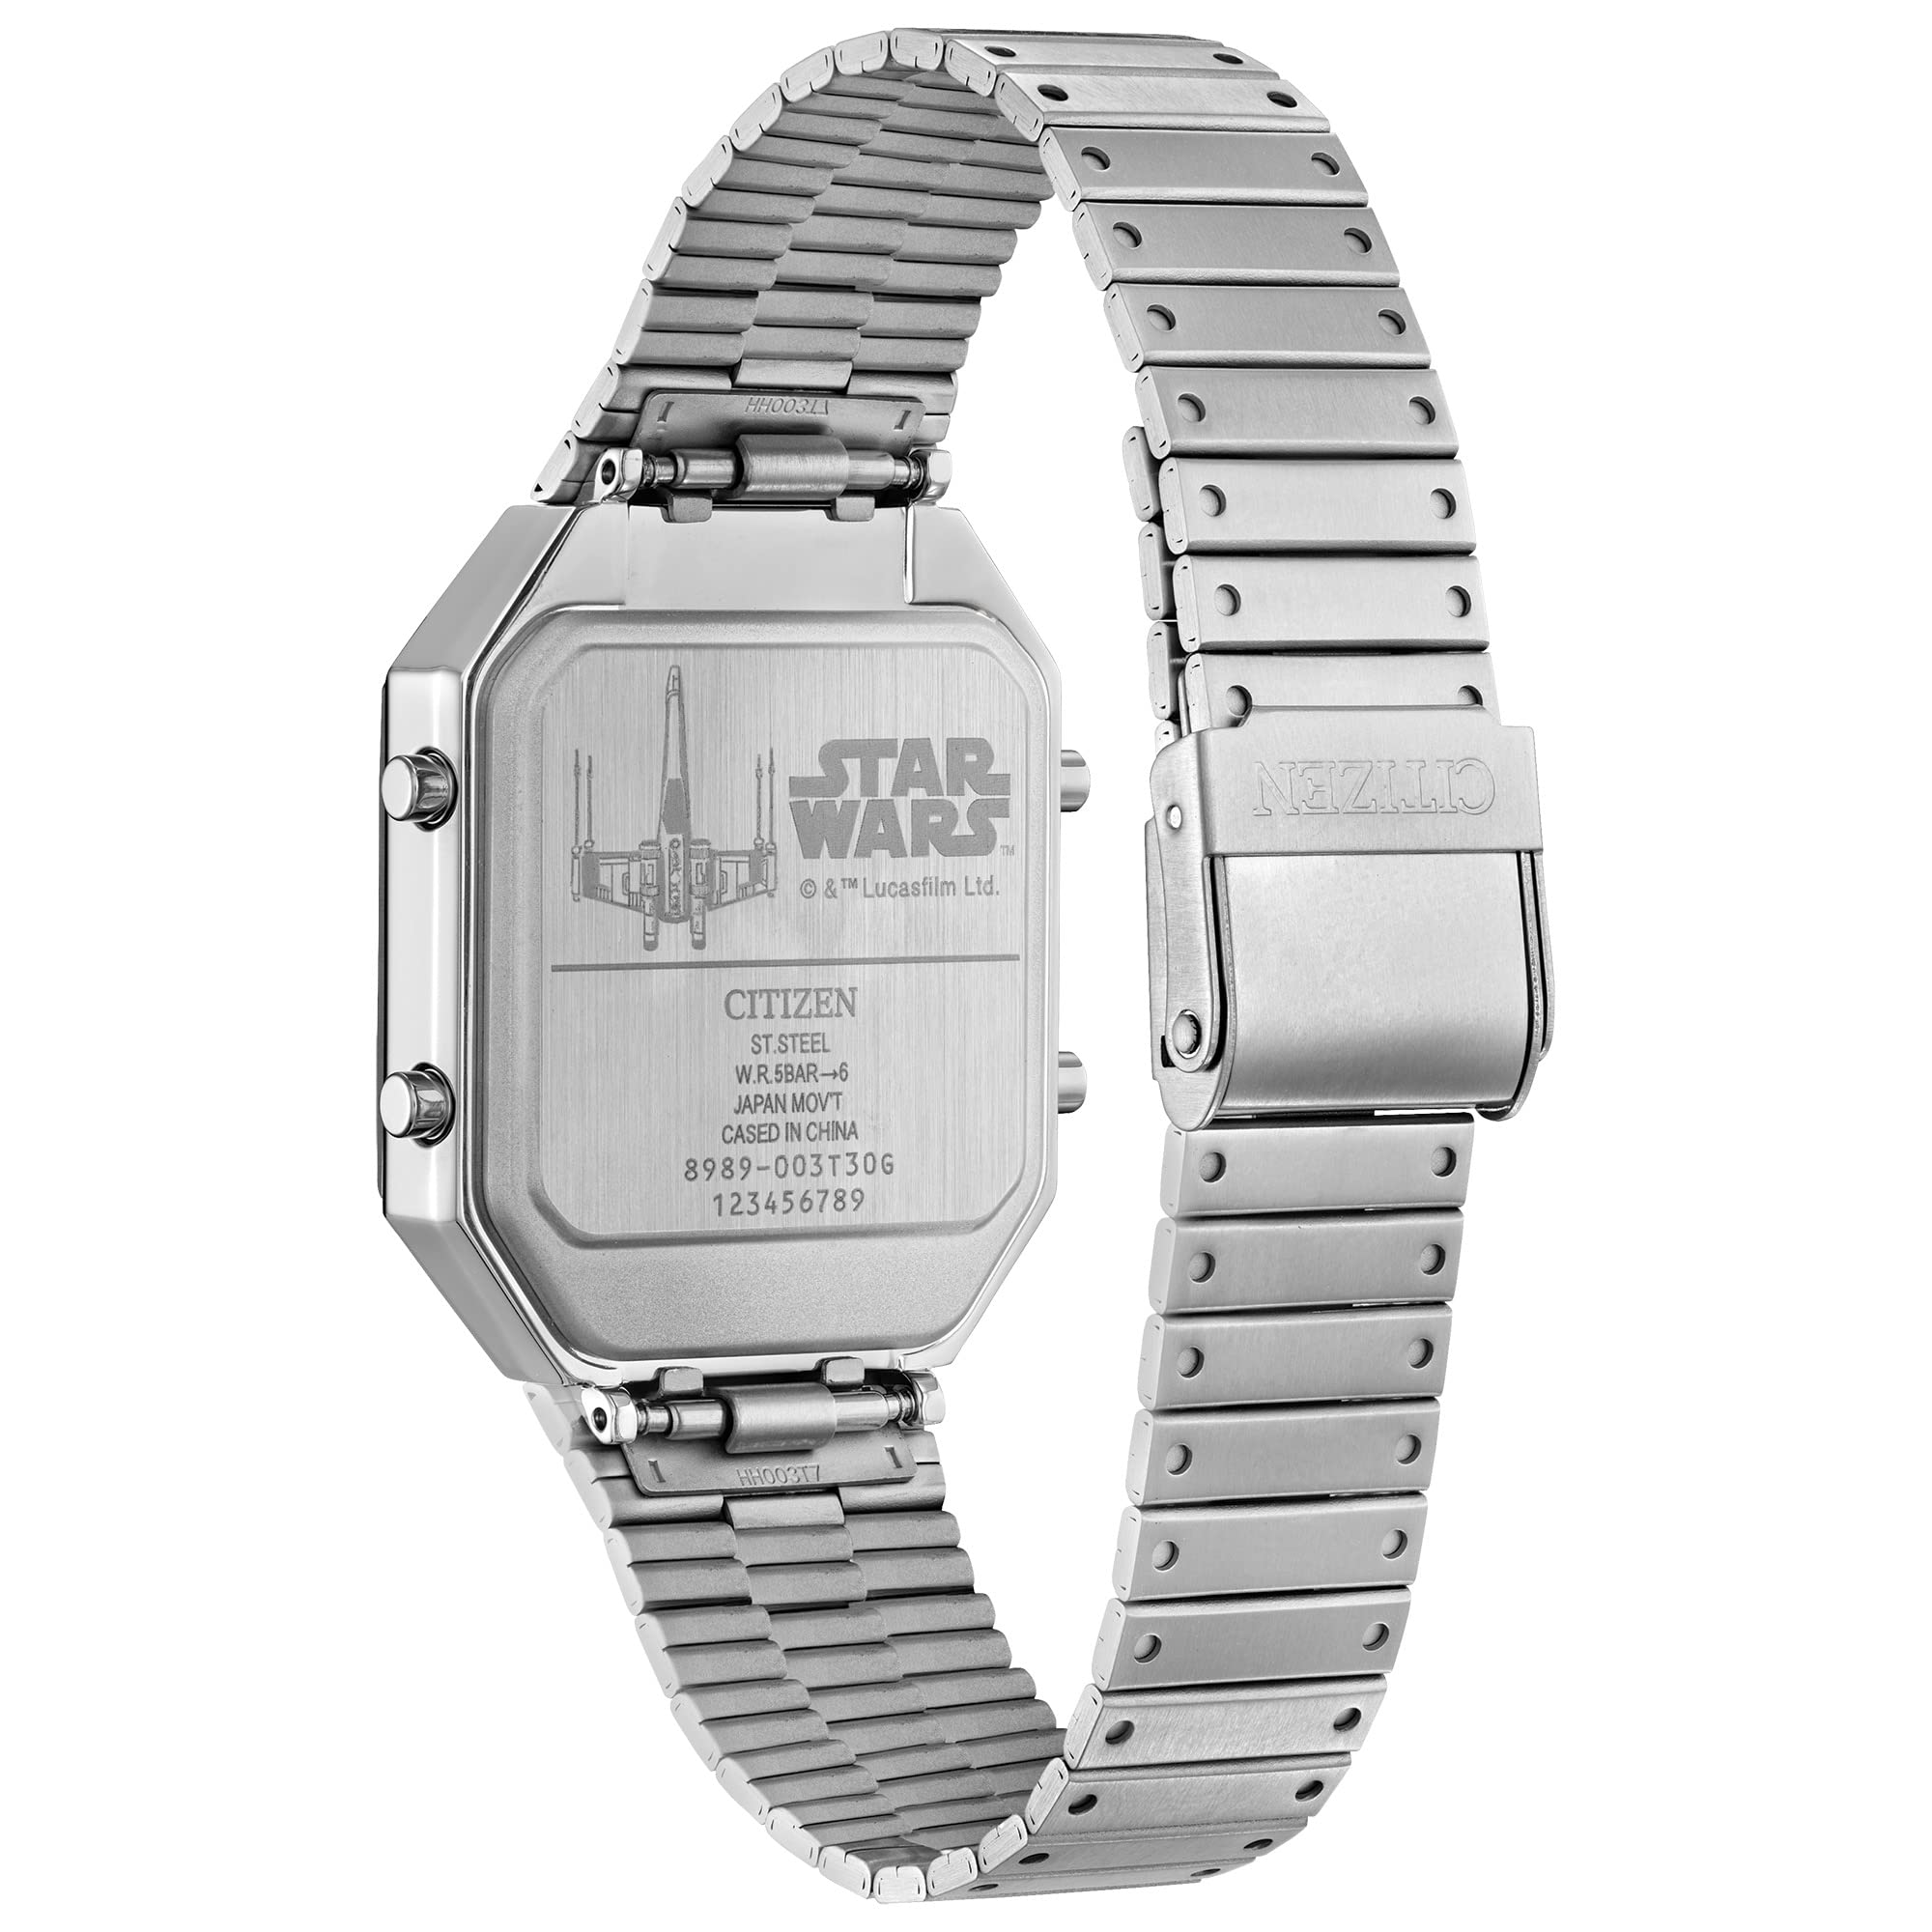 Citizen Men's Star Wars Vintage Ana-Digi Quartz Stainless Steel Watch, Rectangular